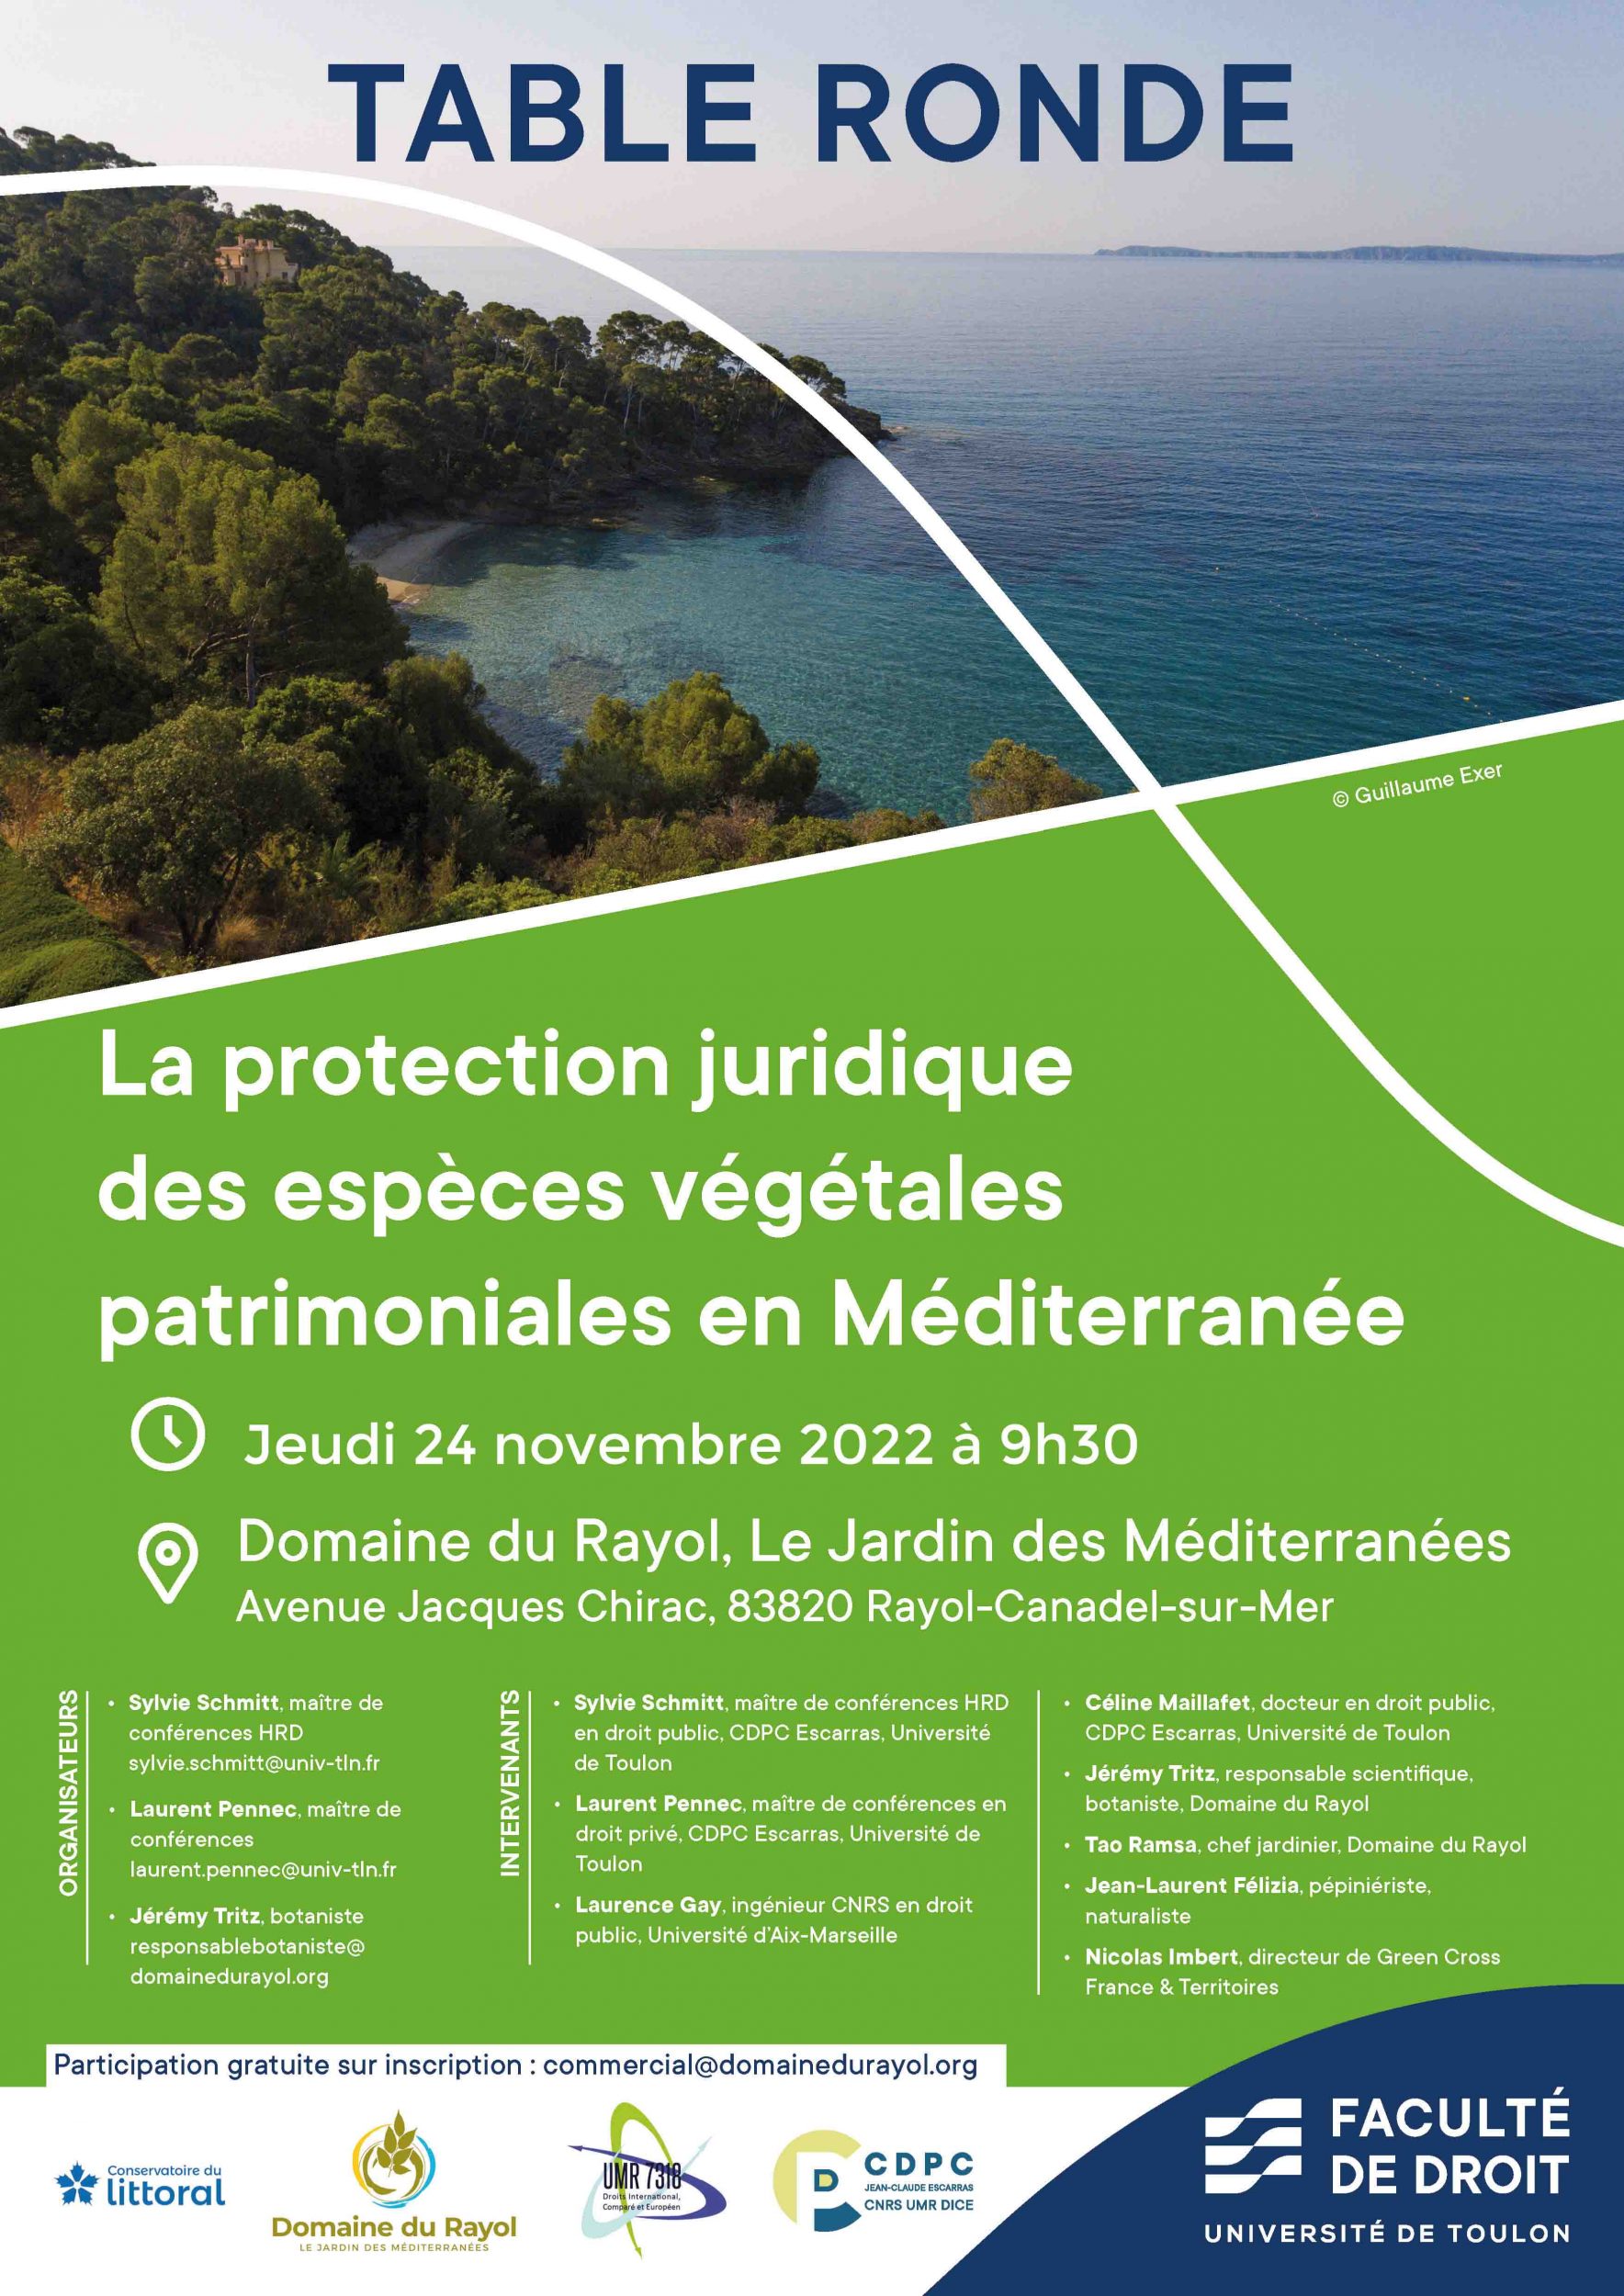 Table ronde : La protection juridique des espèces végétales patrimoniales en Méditerranée